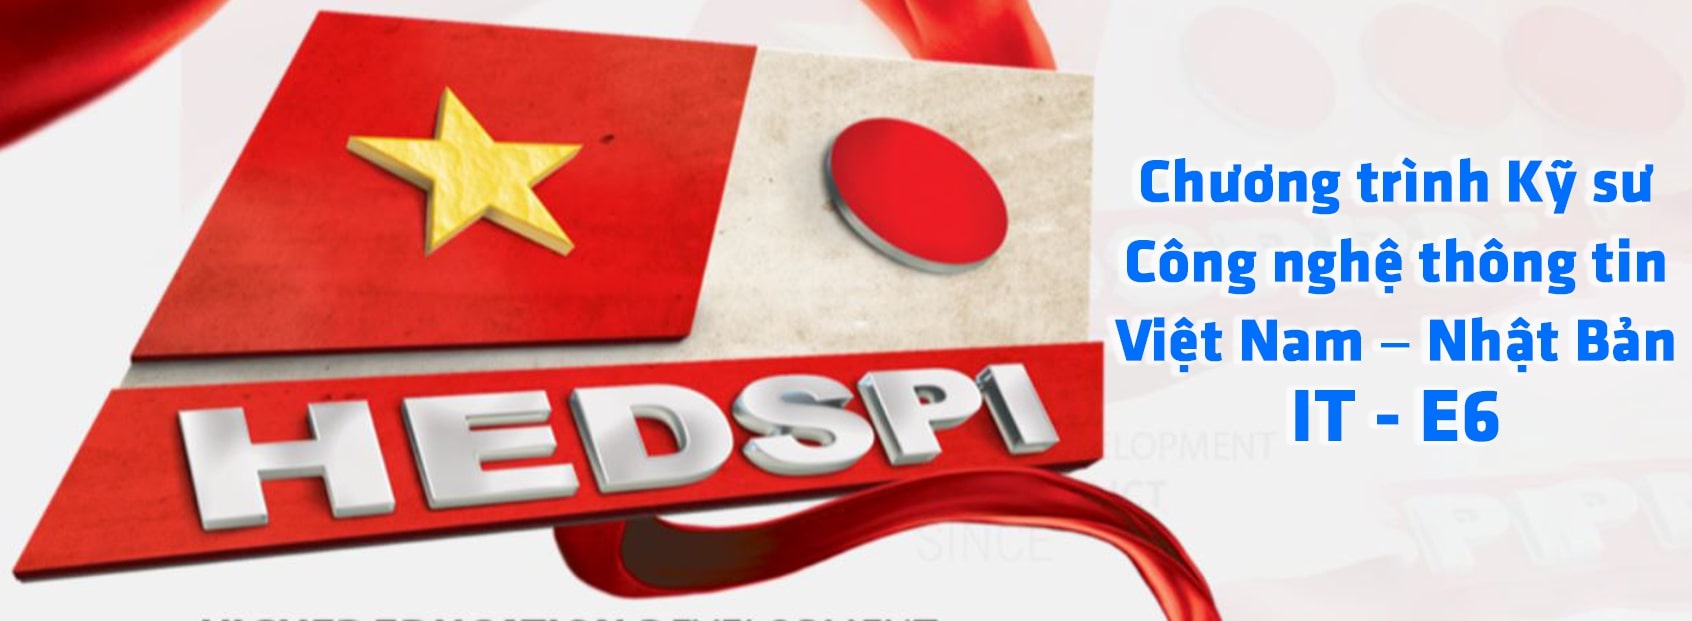 Chương trình ELITECH Công nghệ thông tin Việt – Nhật (HEDSPI – IT-E6)